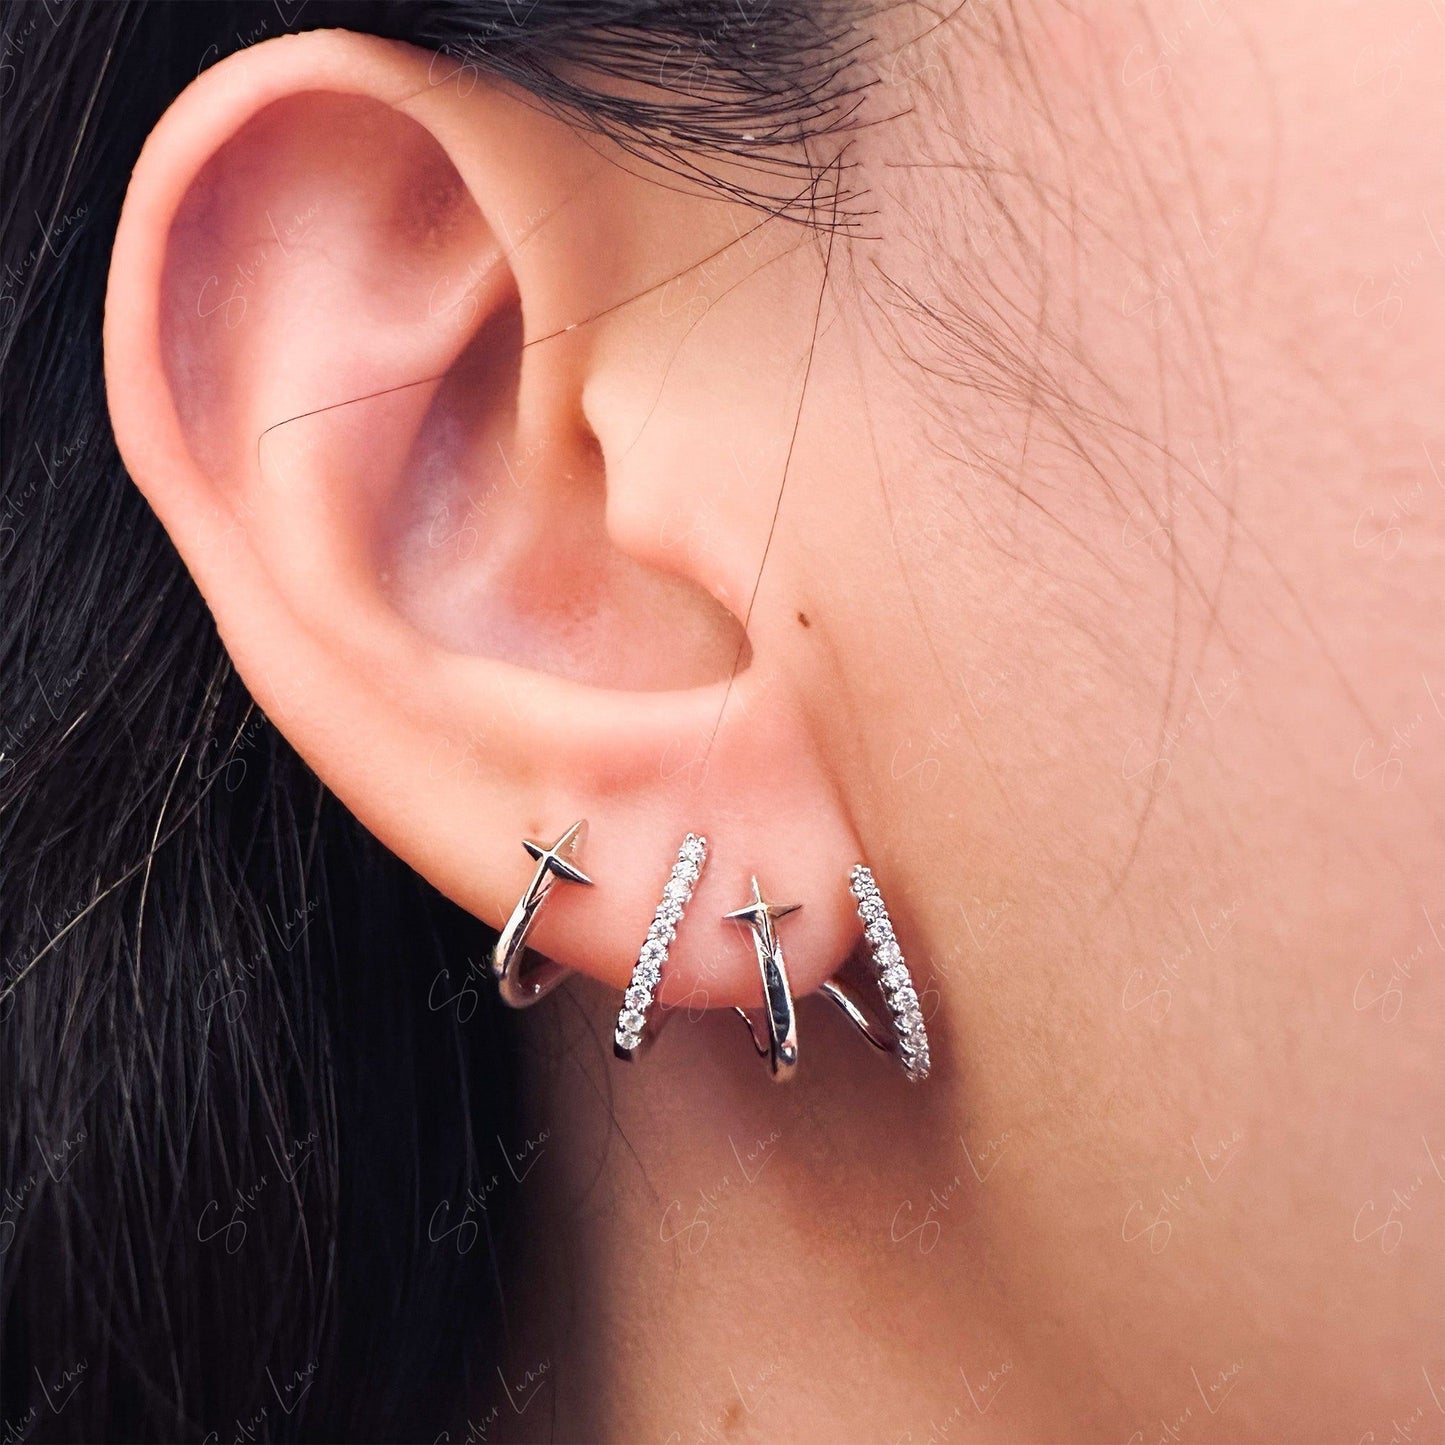 Star wrap micro zircon stud earrings